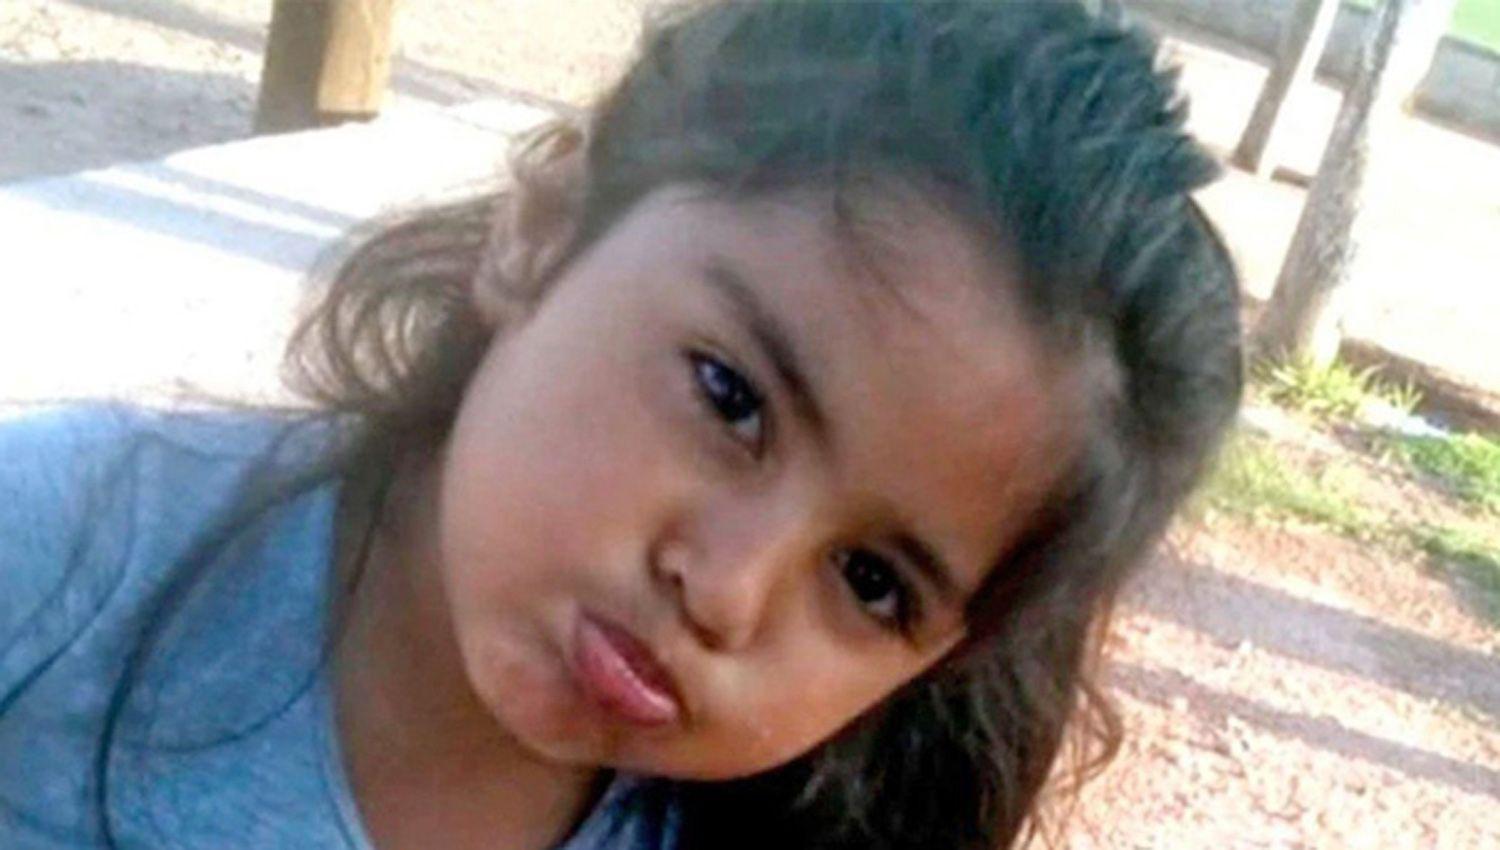 Buacutesqueda de Guadalupe- un sujeto con una nintildea en Colonia Dora alertoacute a las autoridades